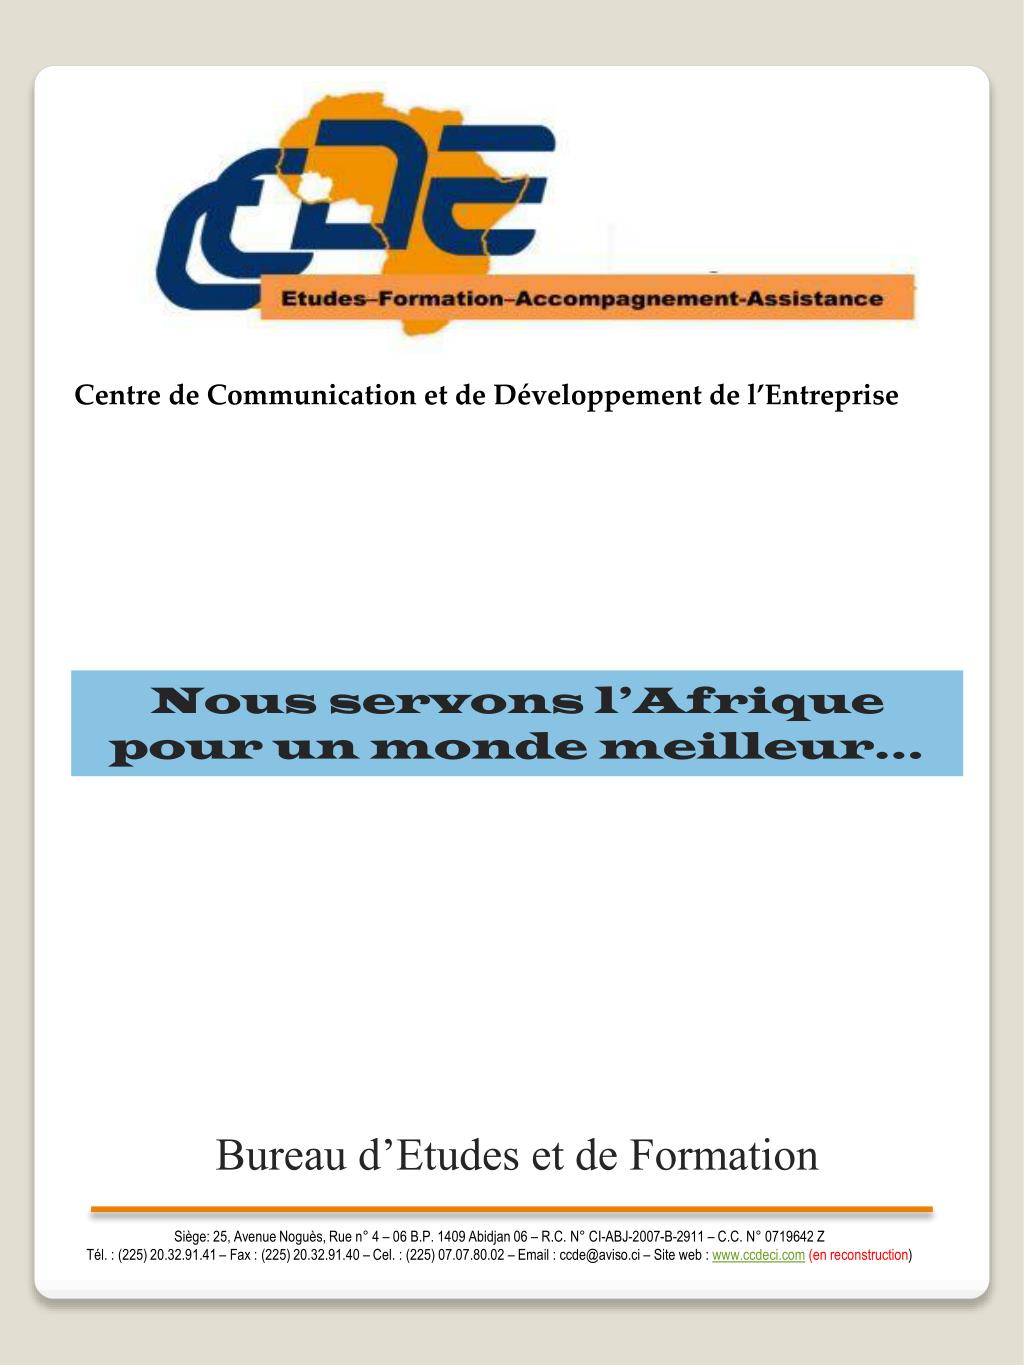 PPT - Bureau d'Etudes et de Formation PowerPoint Presentation, free  download - ID:2254977